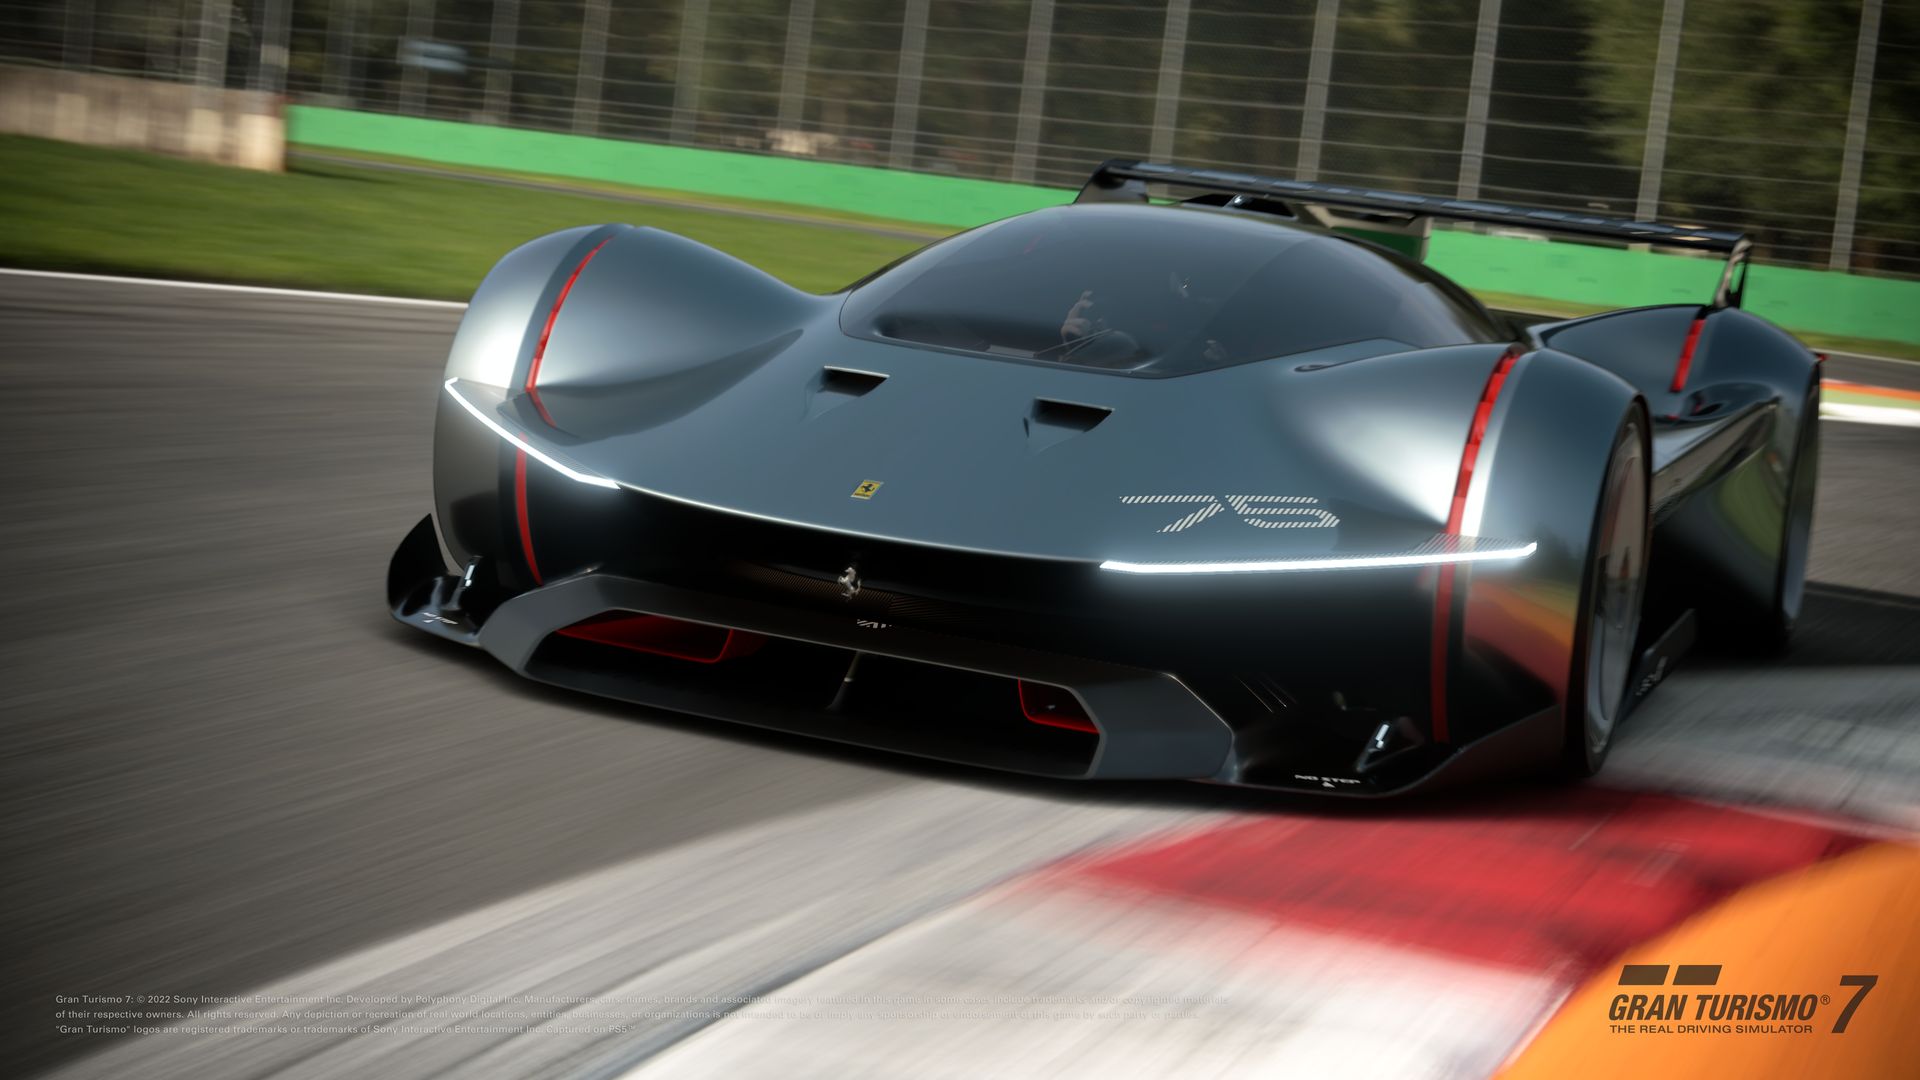 More information about "Gran Turismo 7: update Dicembre disponibile con la Ferrari Vision Gran Turismo"